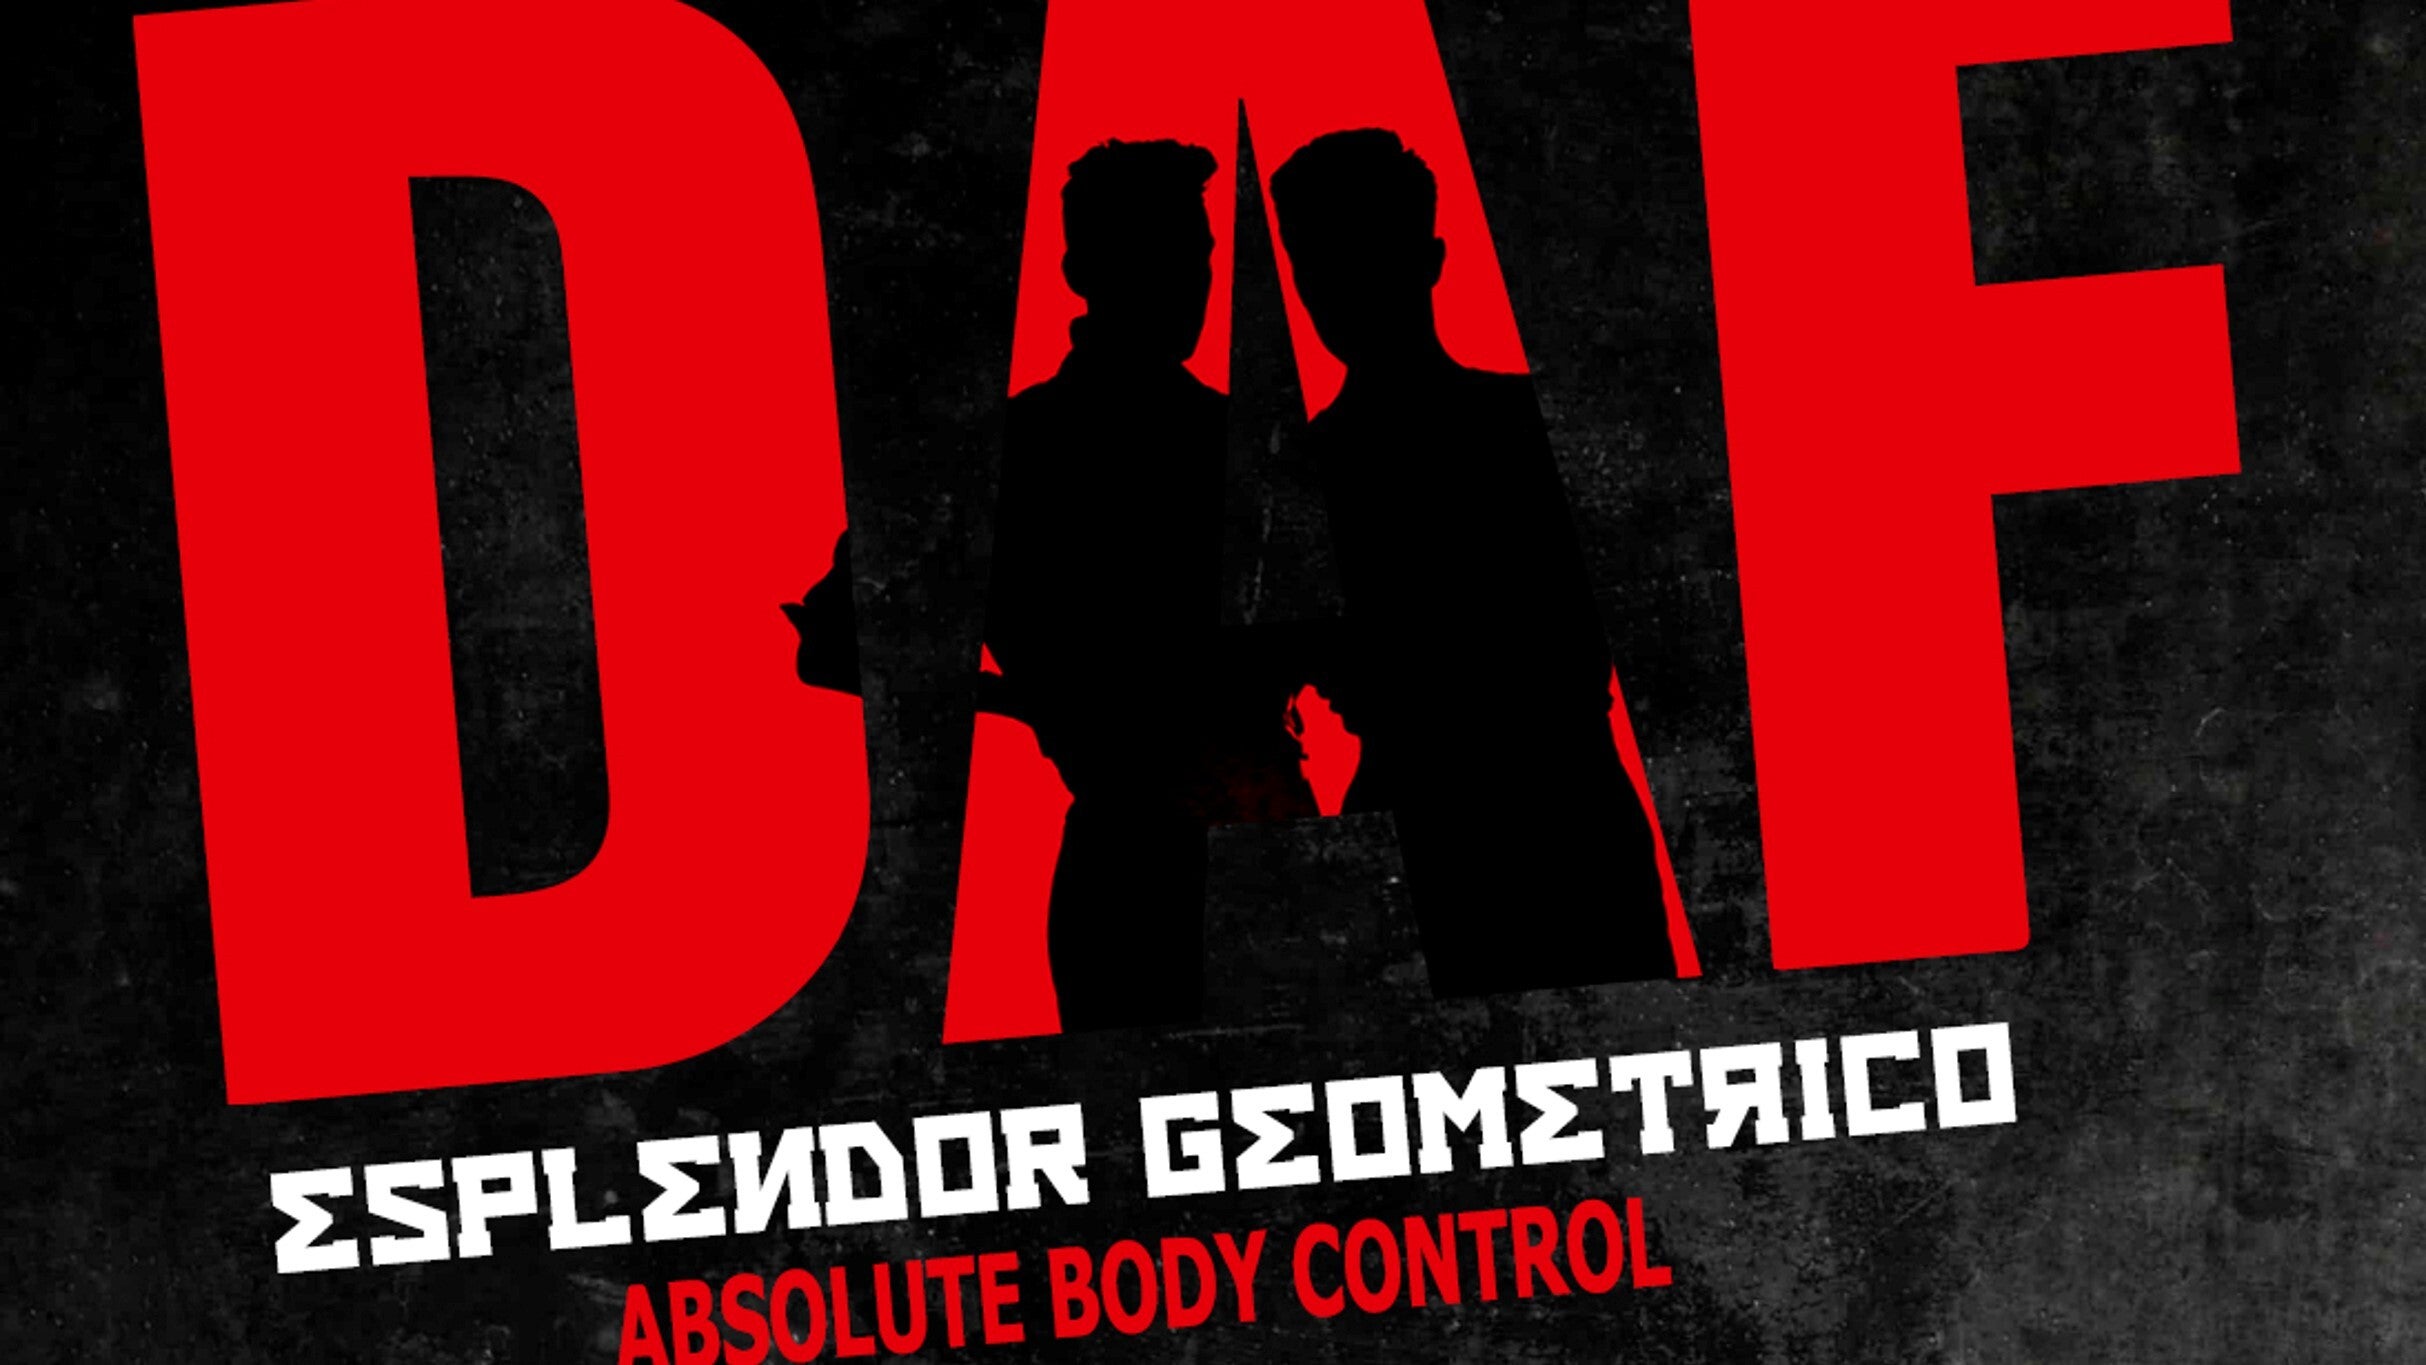 DAF + Esplendor Geométrico + Absolute Body Control en Madrid